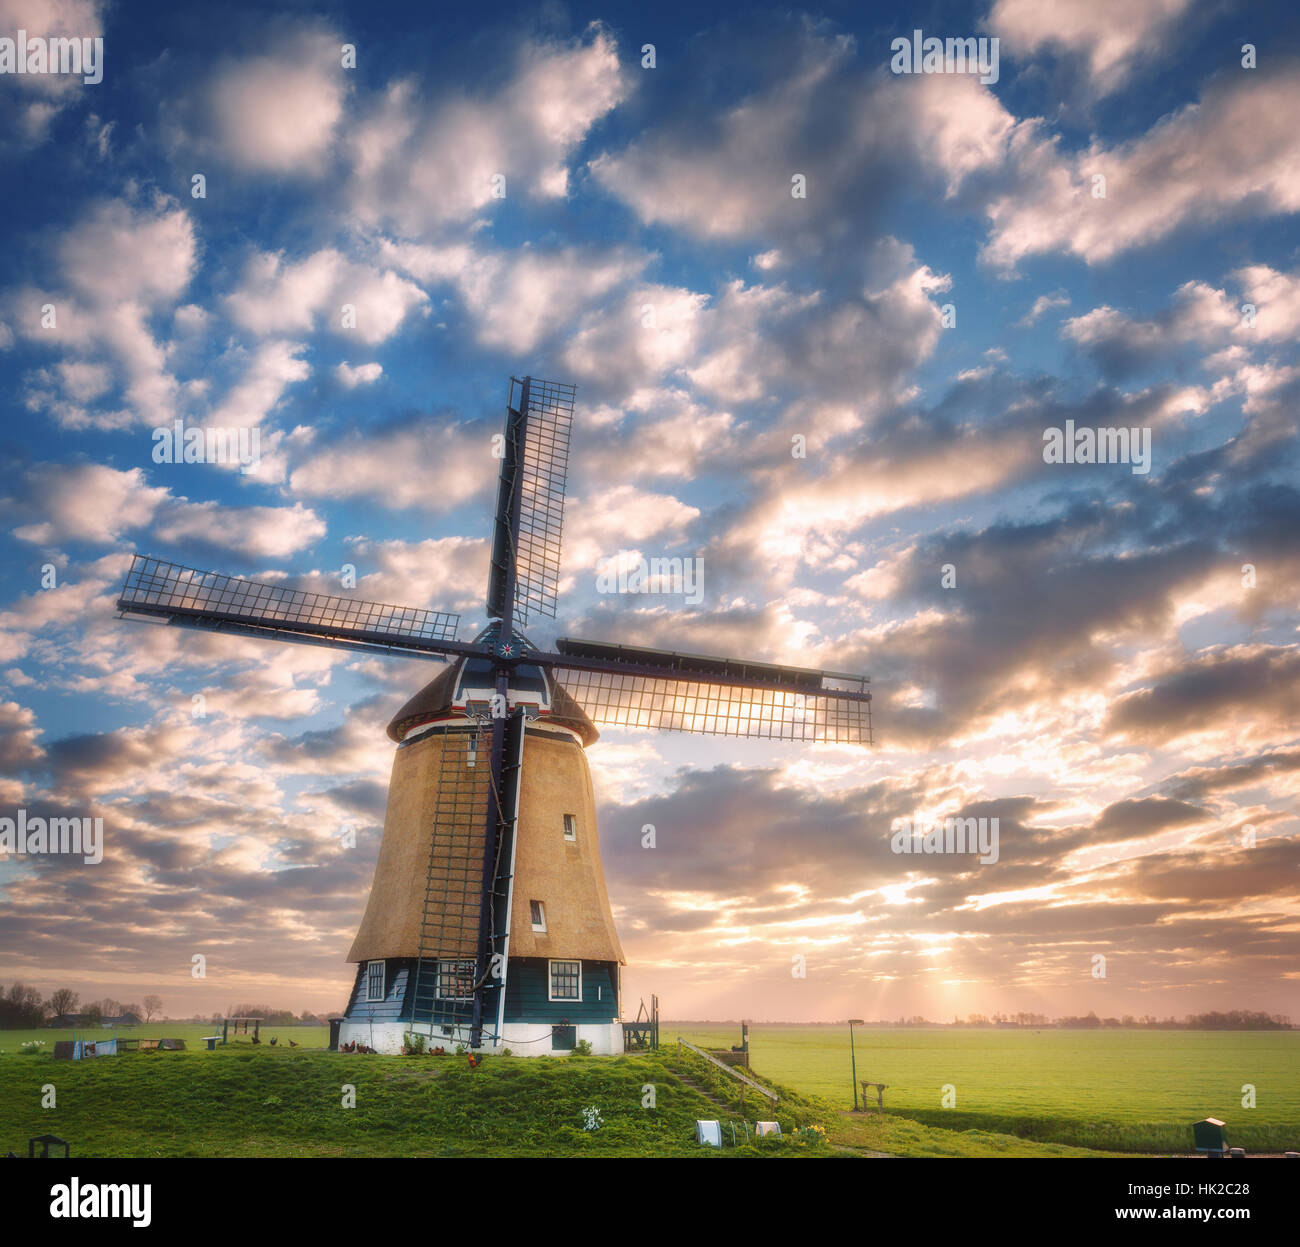 El molino de viento al amanecer en Holanda. Hermoso y antiguo molino de viento holandés contra el colorido cielo con nubes. Paisaje primaveral Foto de stock